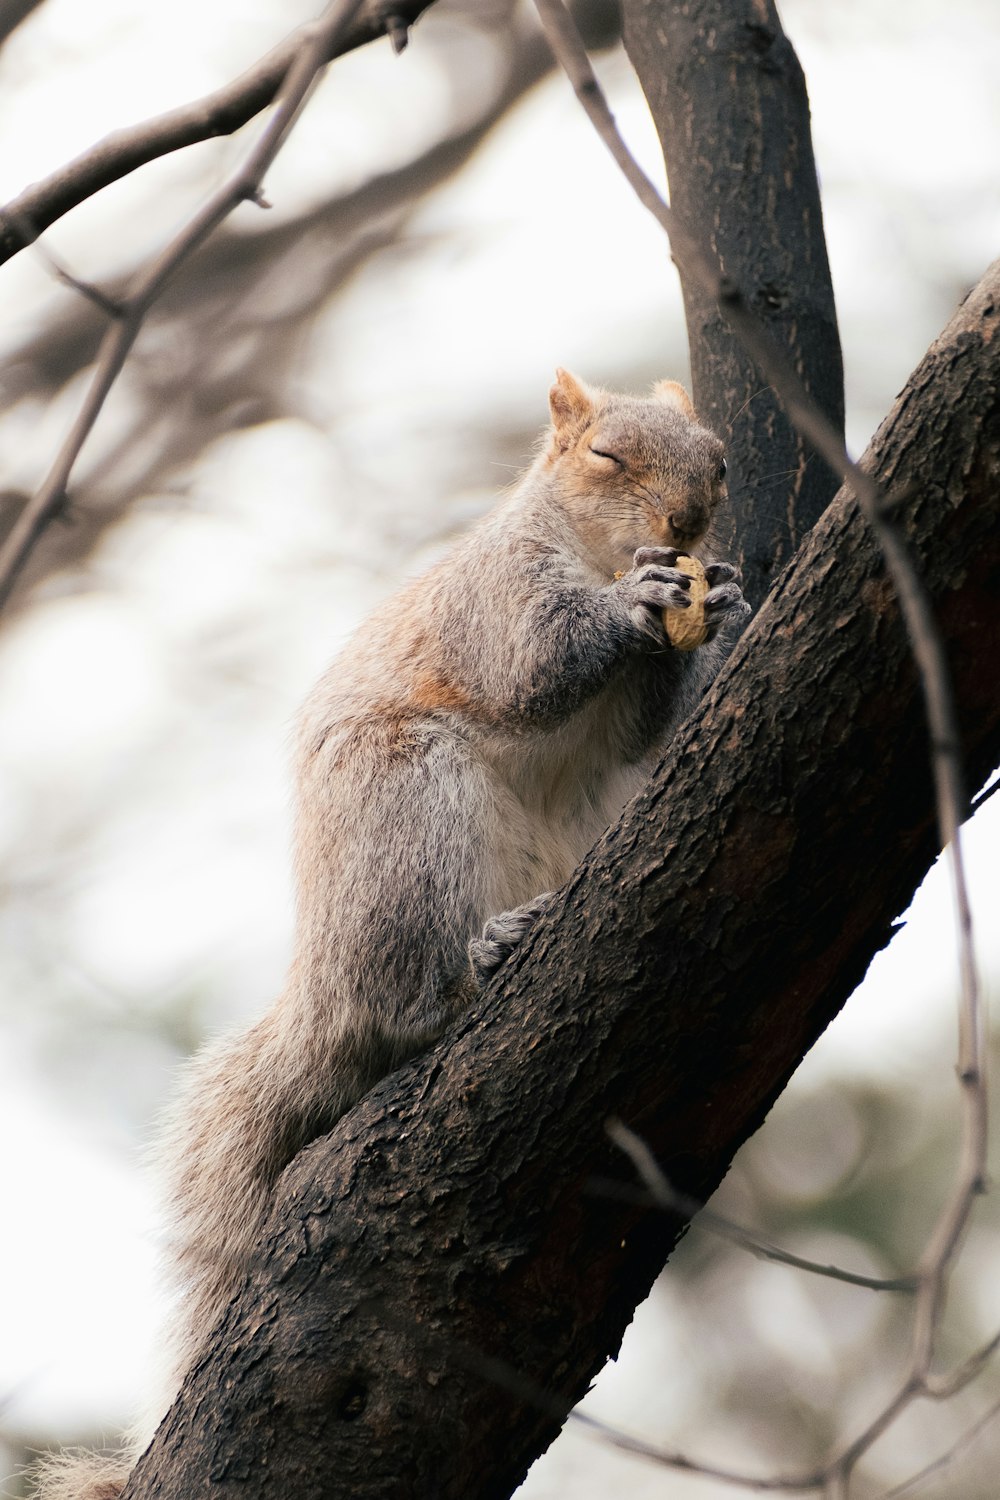 다람쥐 한 마리가 나뭇가지에 앉아 있다